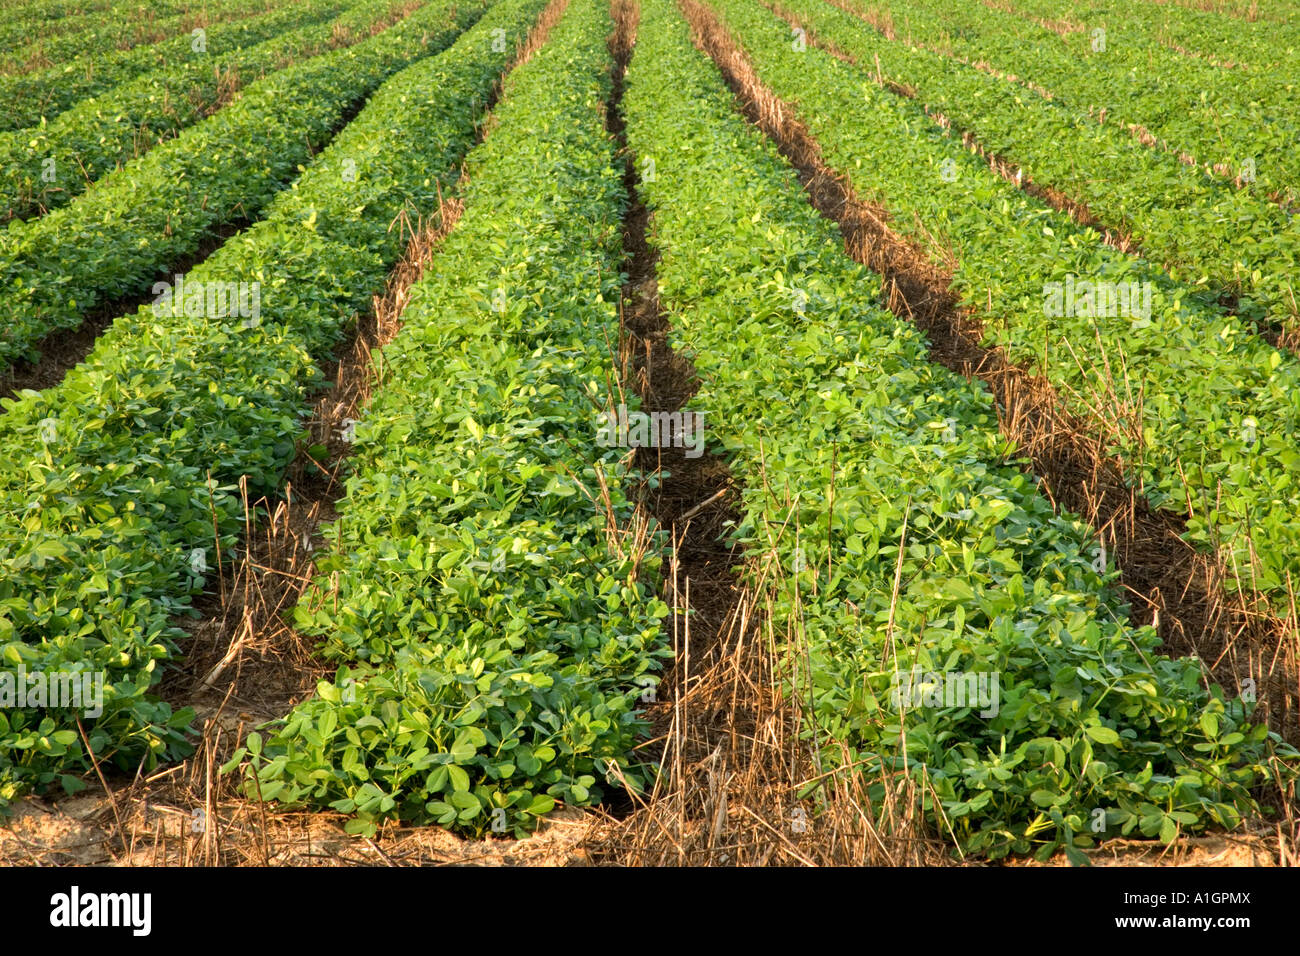 Peanut field, no till, converging rows Stock Photo